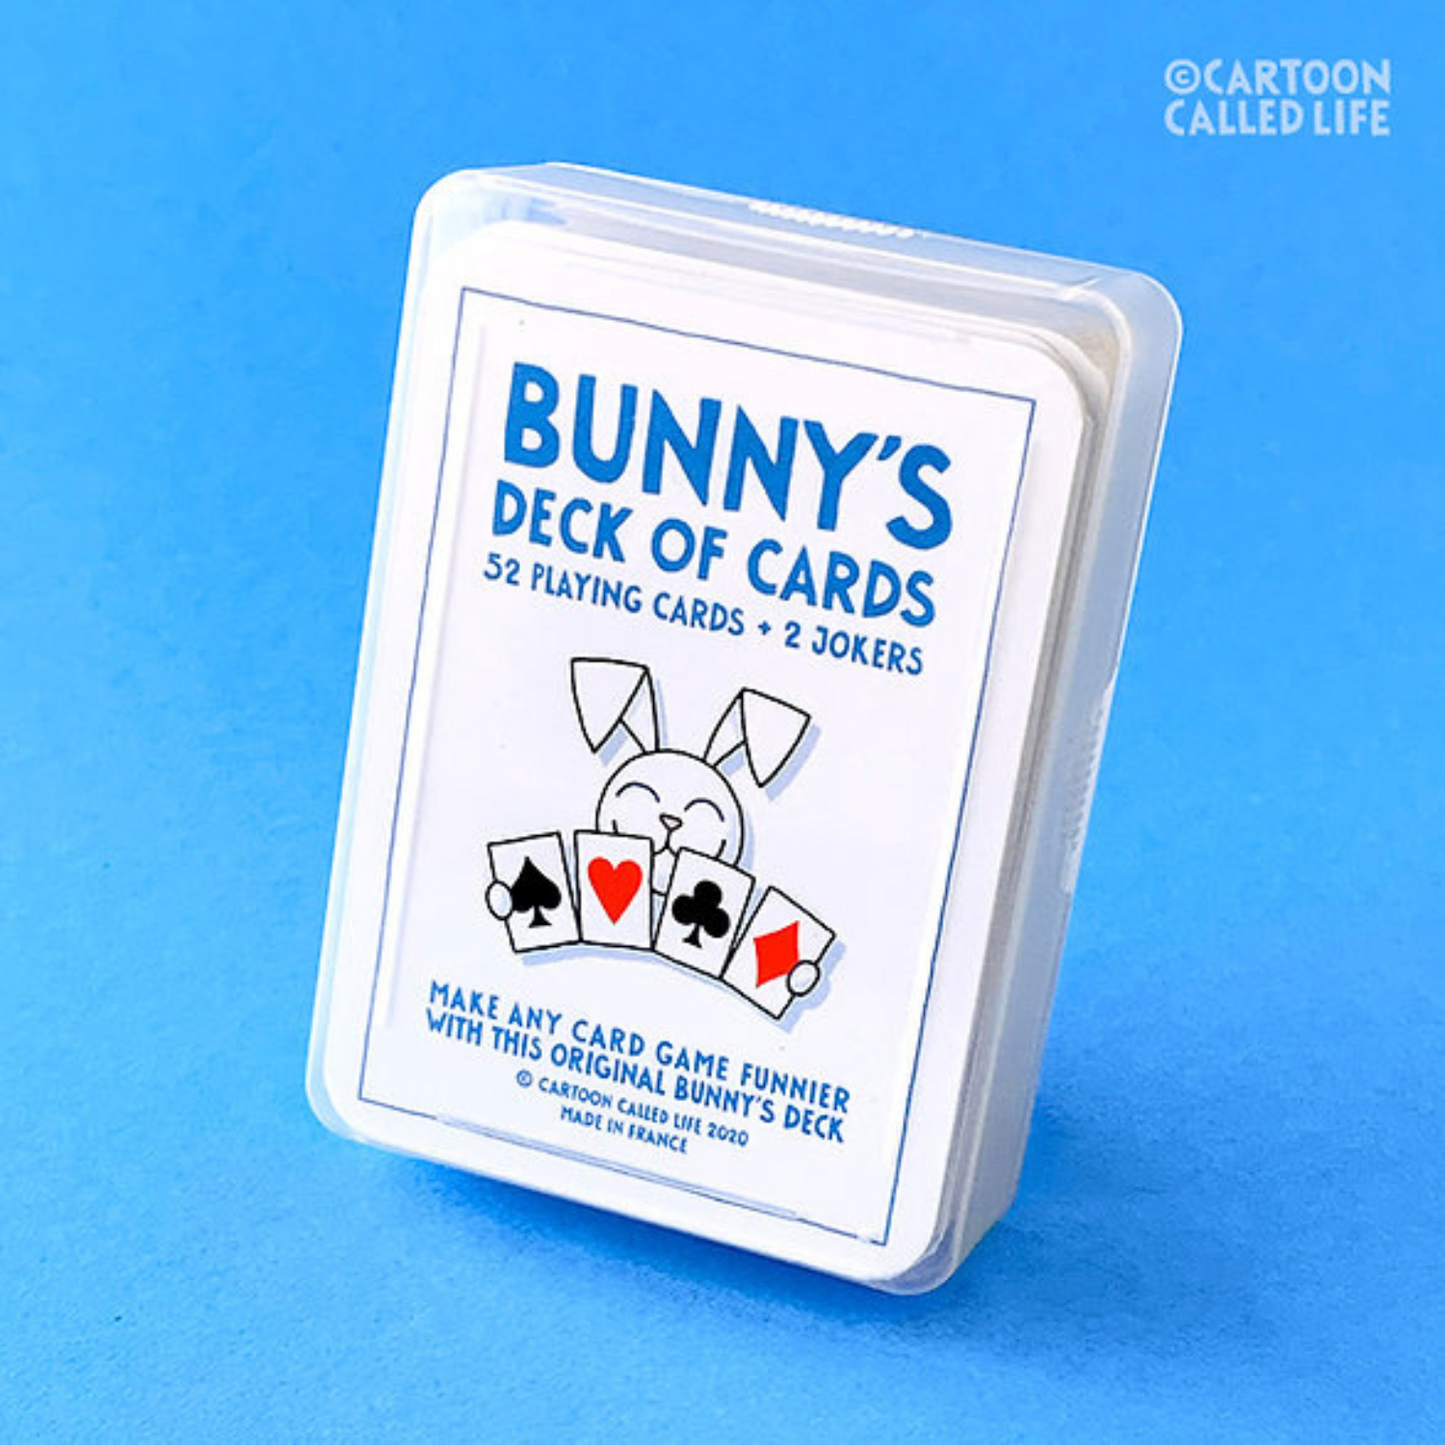 Bunny's Speelkaarten, rijkelijk geïllustreerd met humoristische cartooons. Ontworpen door Cartoon Called Life. Te koop bij Flavourez